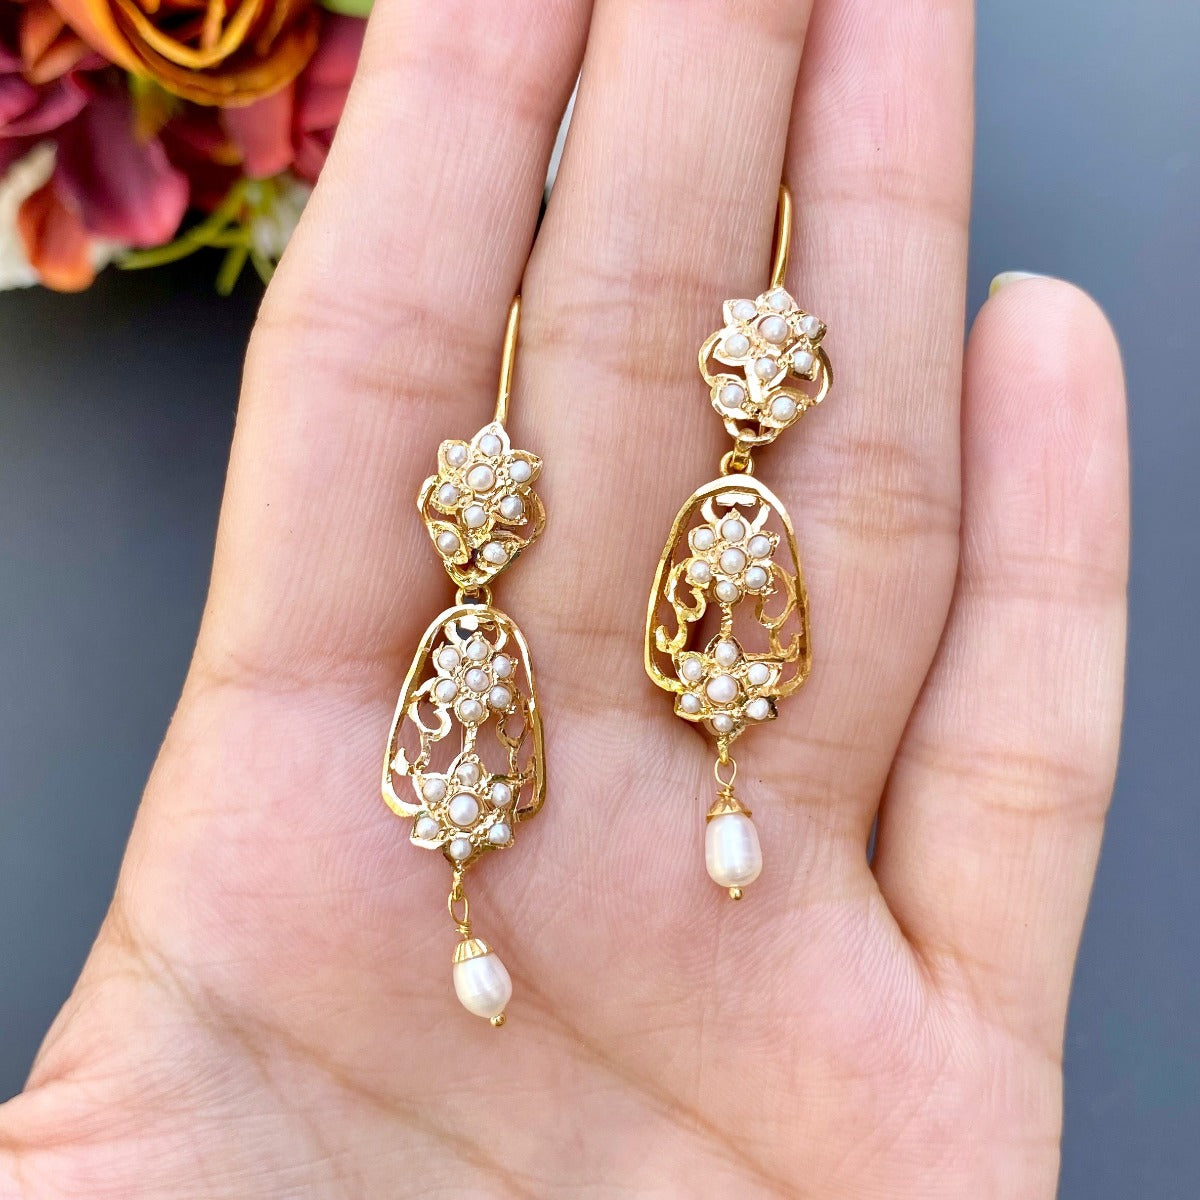 5 Gram Gold Earrings - Buy 5 Gram Gold Earrings online at Best Prices in  India | Flipkart.com